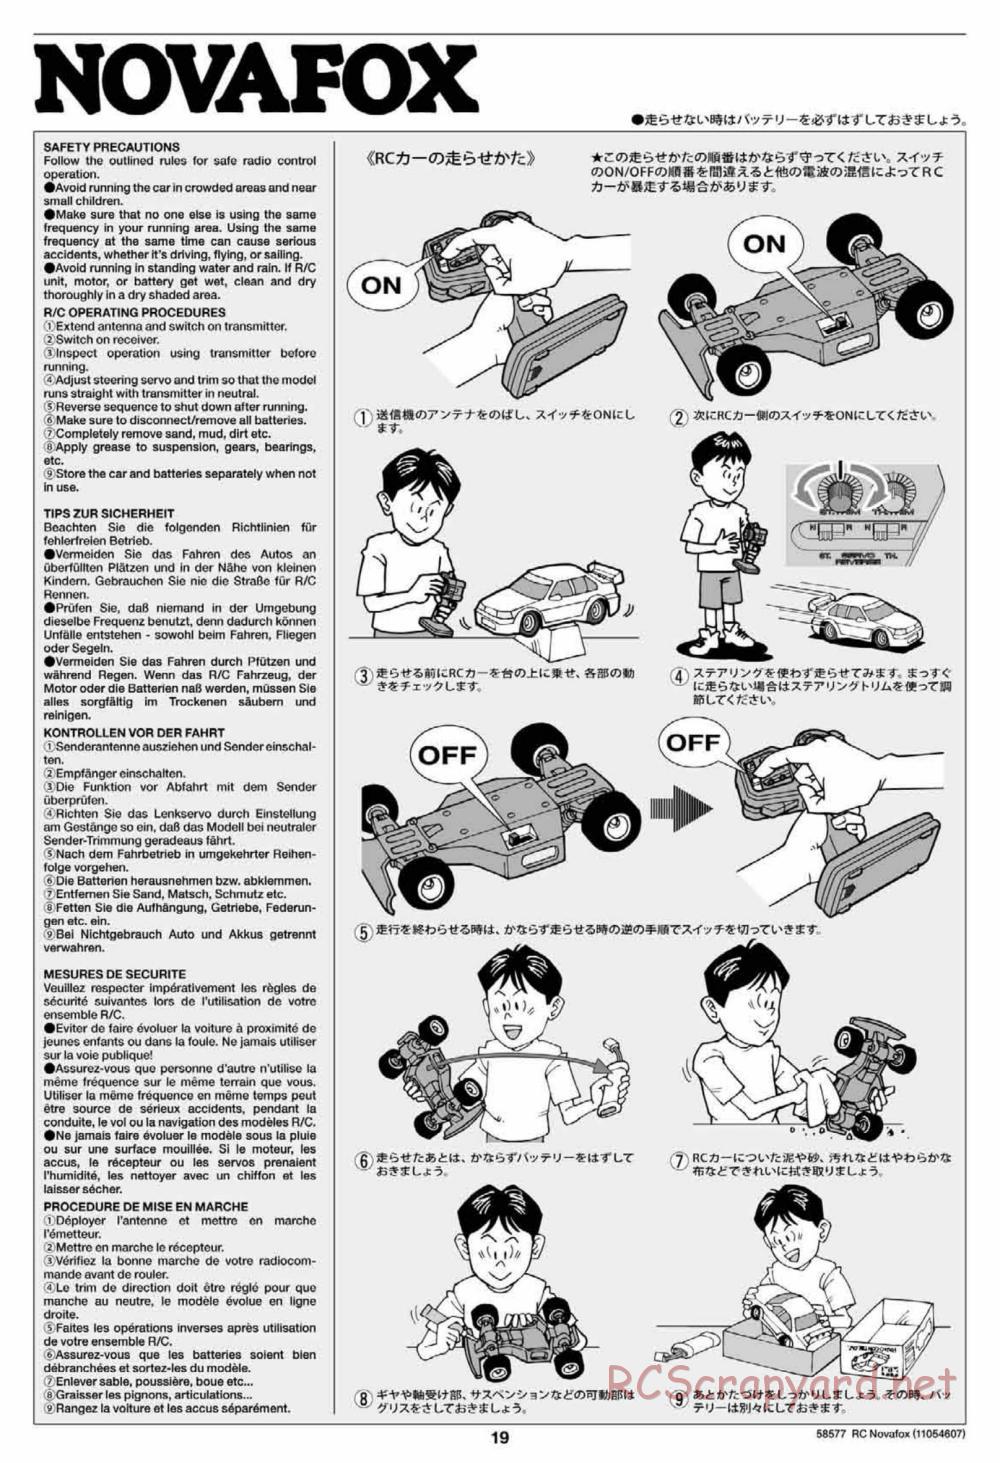 Tamiya - Novafox Chassis - Manual - Page 19